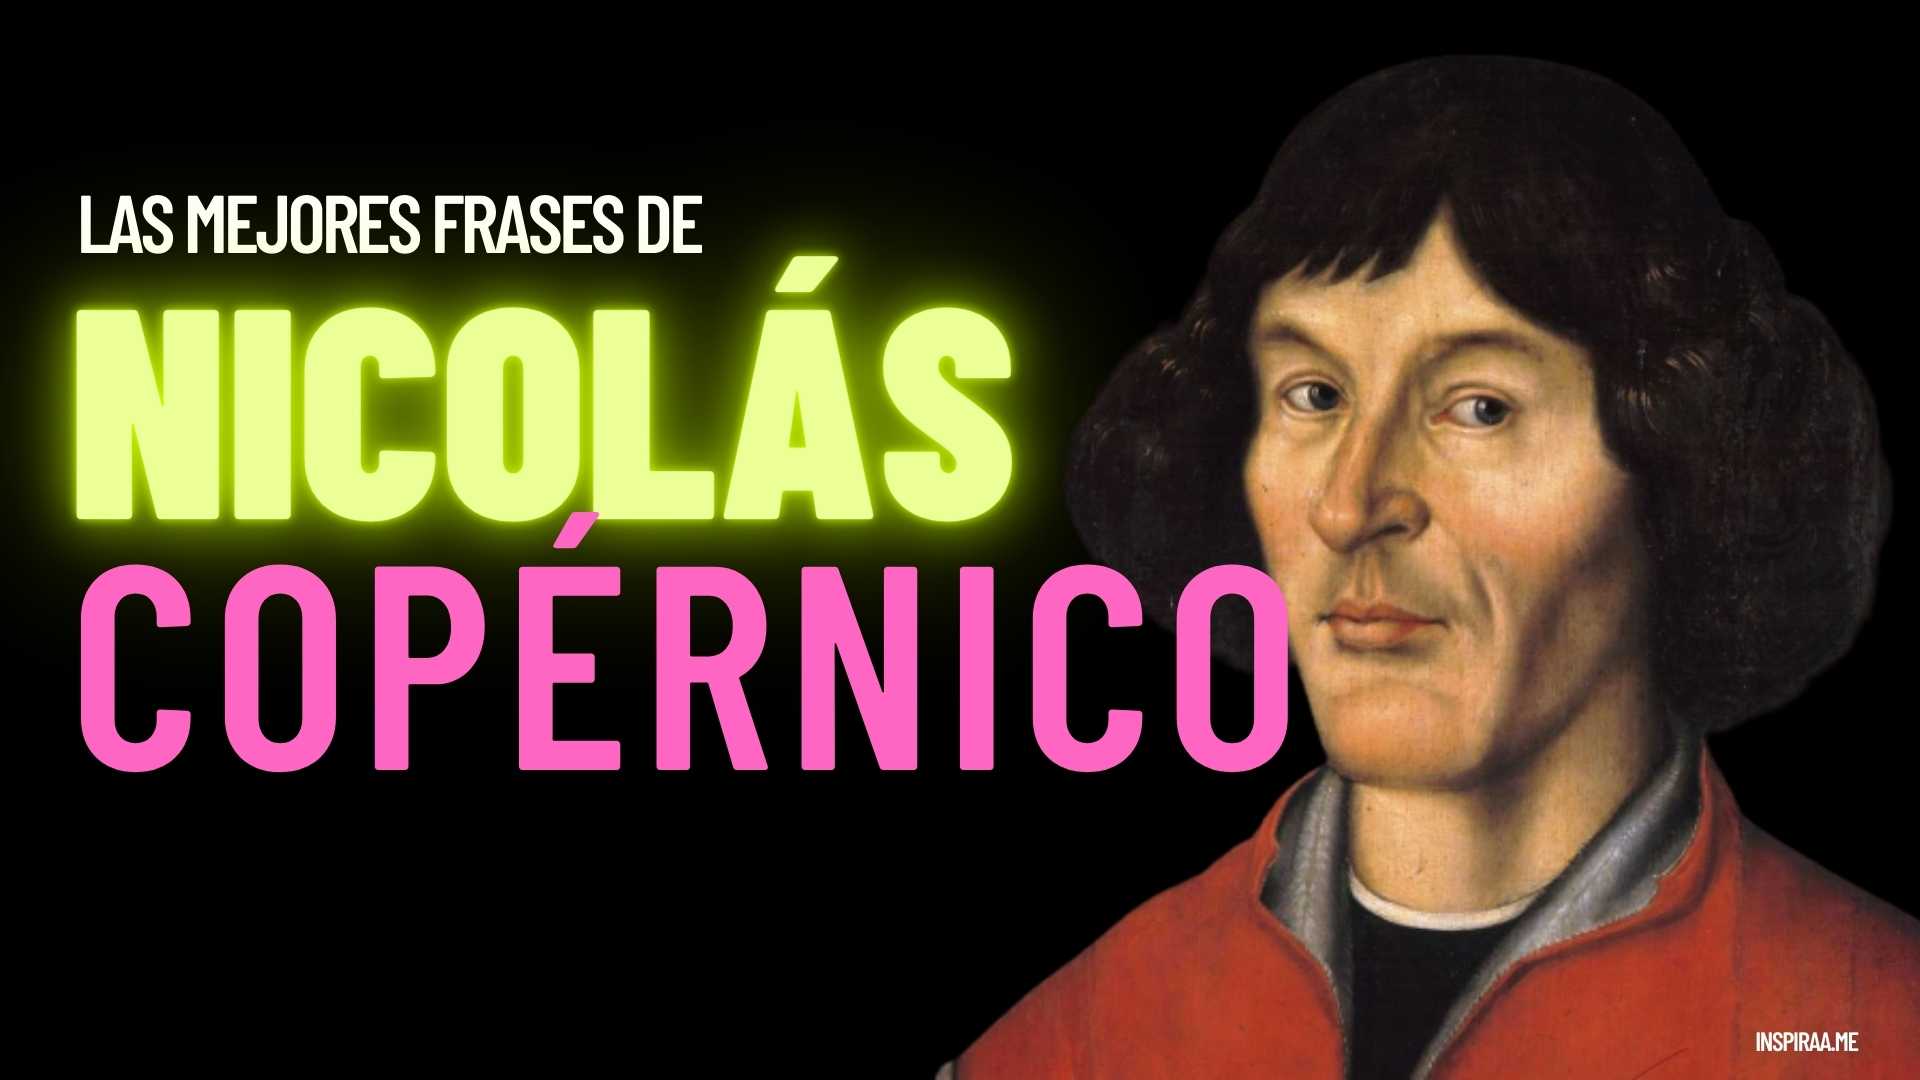 Frases celebres de Nicolas Copernico padre de la astronomía moderna